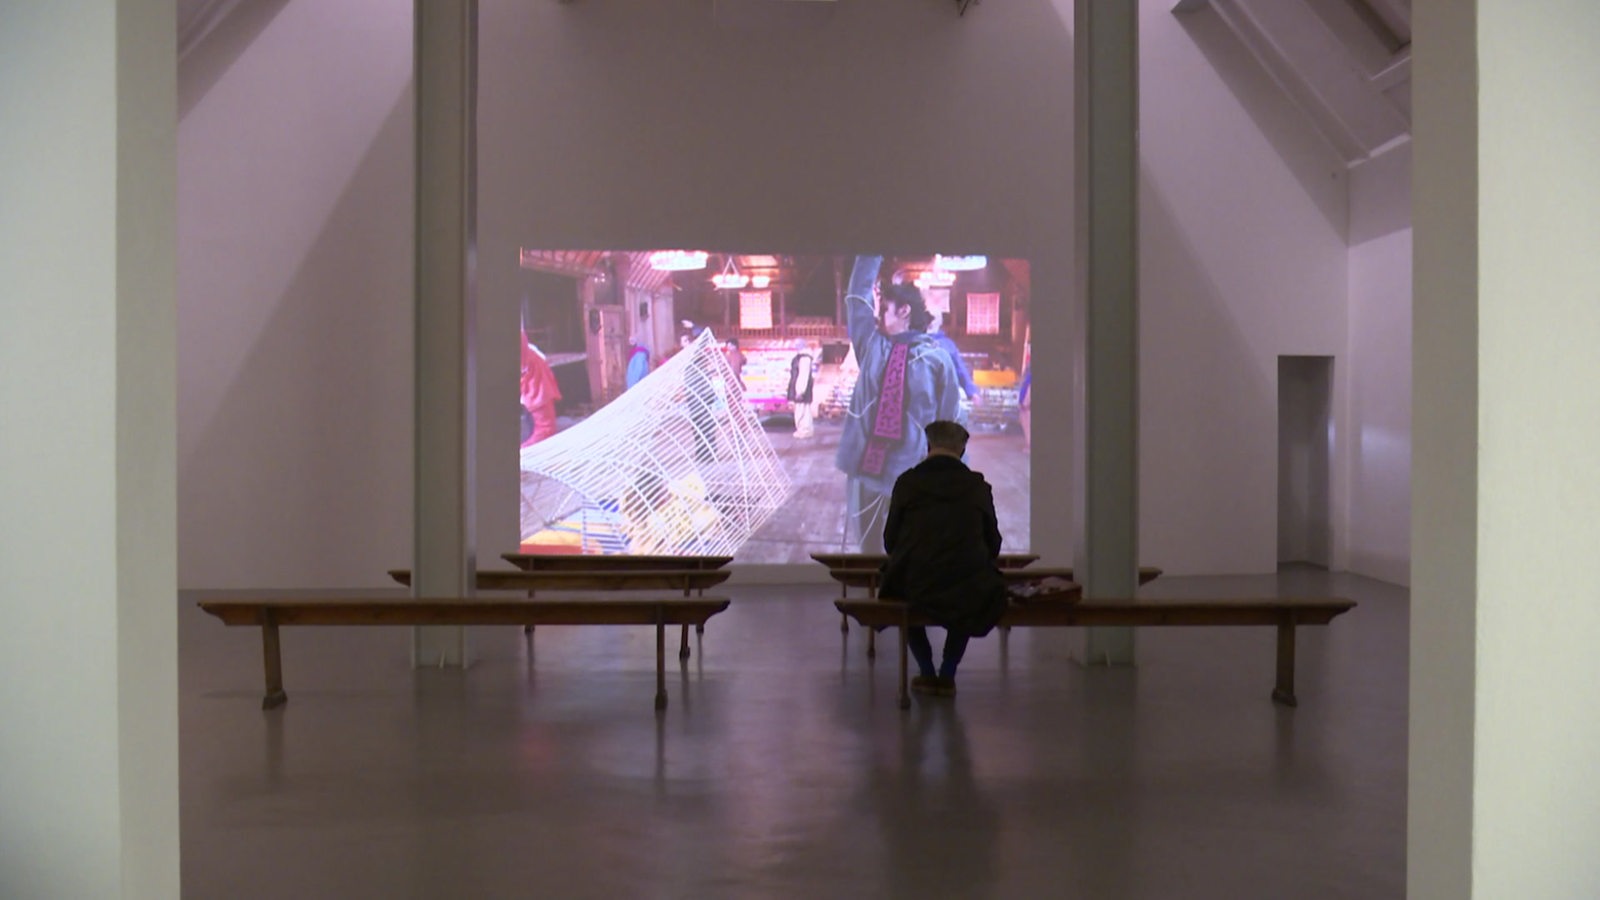 Die neue Ausstellung in der Weserburg zeigt Kunstinstallationen. Bänke sind vor einer Leinwand aufgestellt, auf der ein Film zu sehen ist.